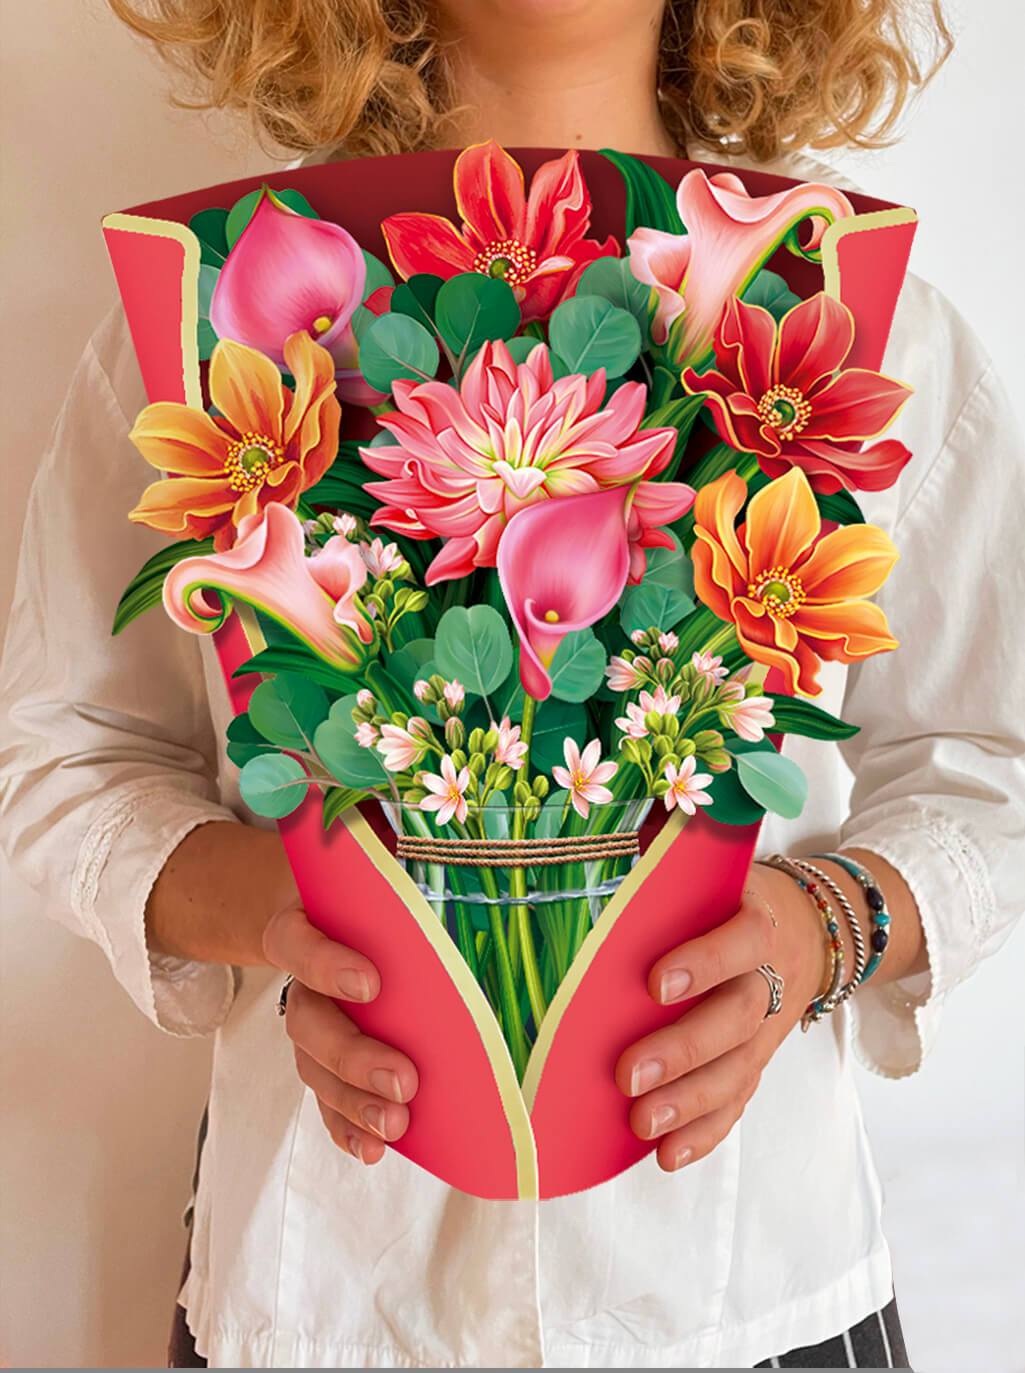 Pop Up Flower Bouquet Greeting Card - Dear Dahlia    